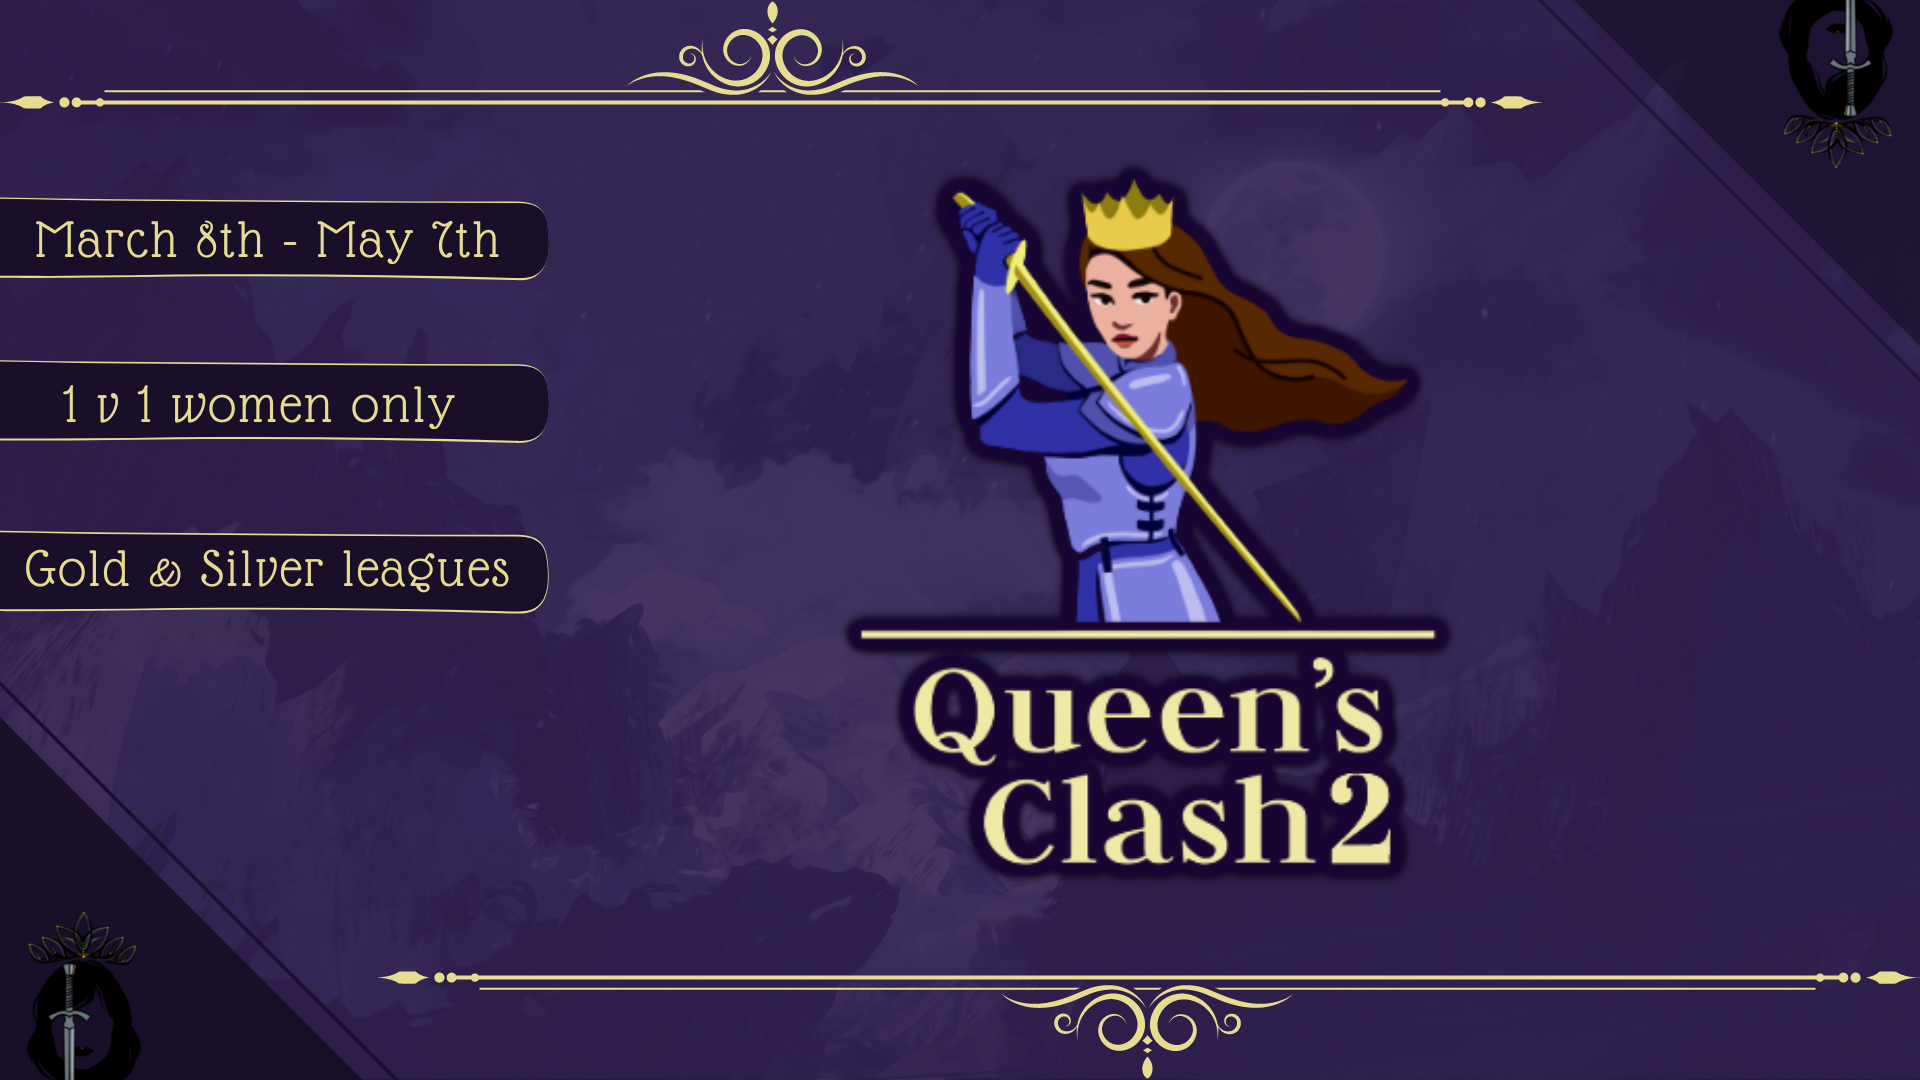 Queen’s Clash 2 is starting!